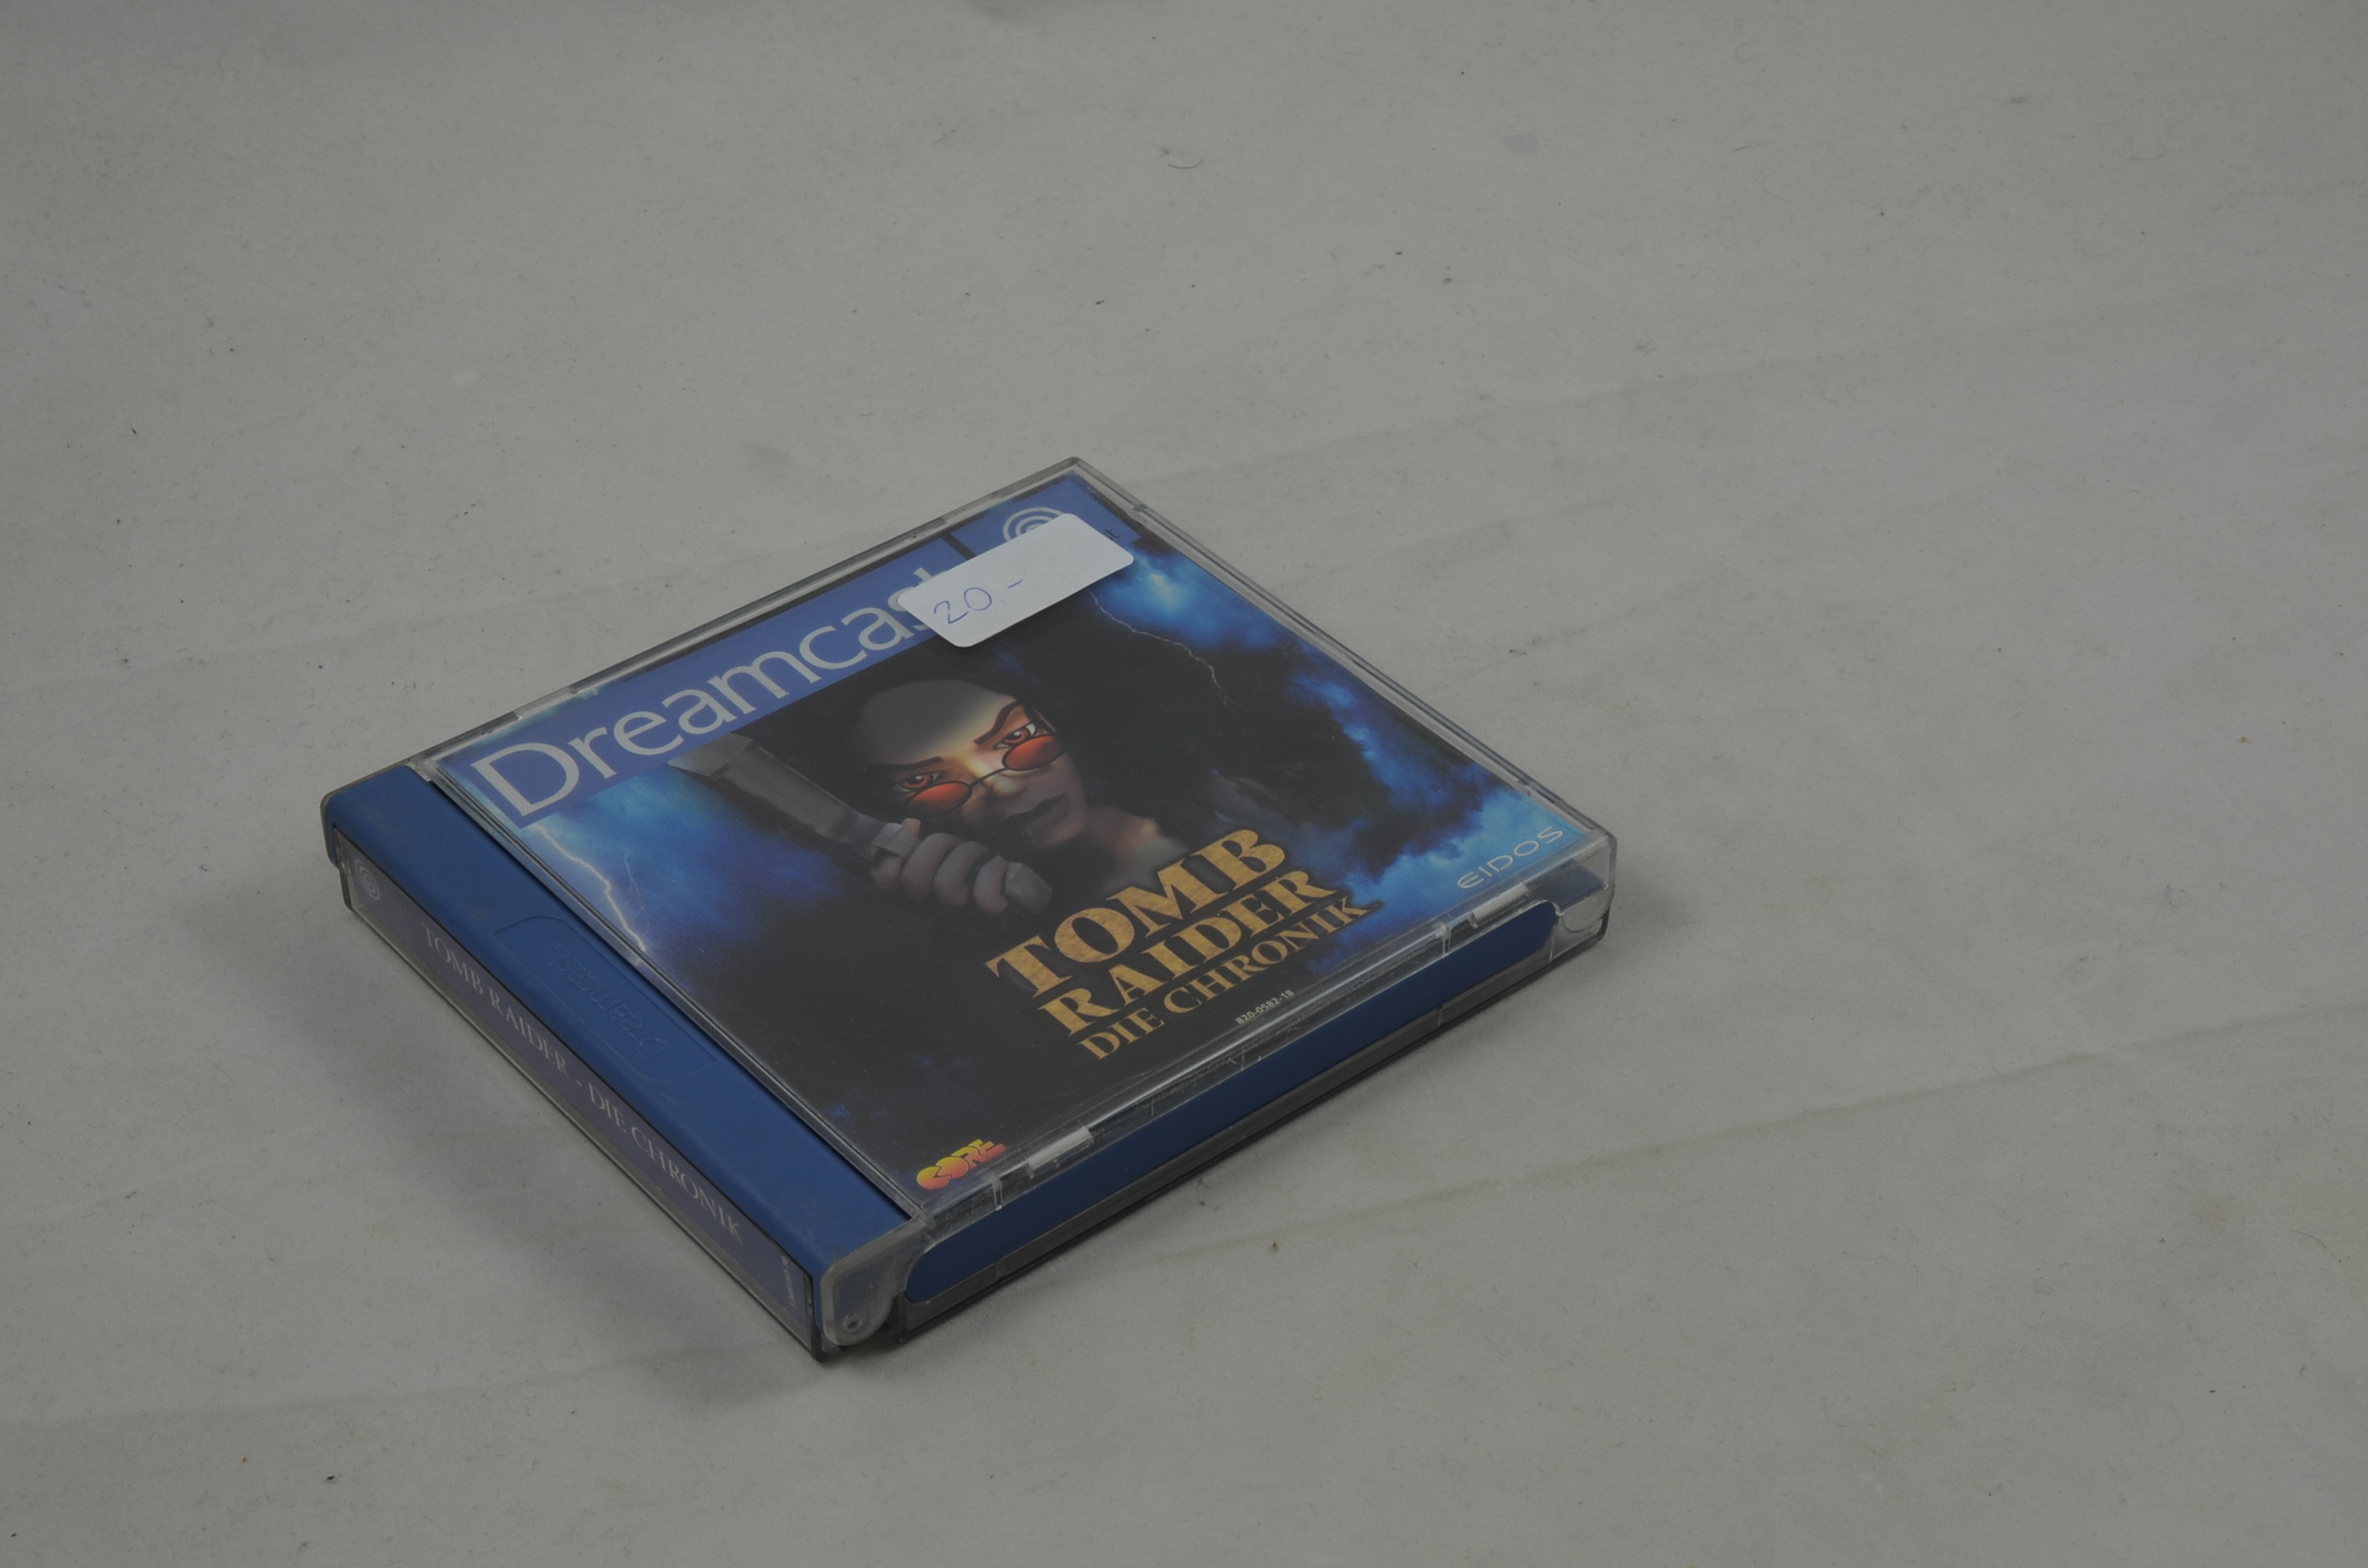 Produktbild von Tomb Raider: Die Chronik Dreamcast Spiel CB